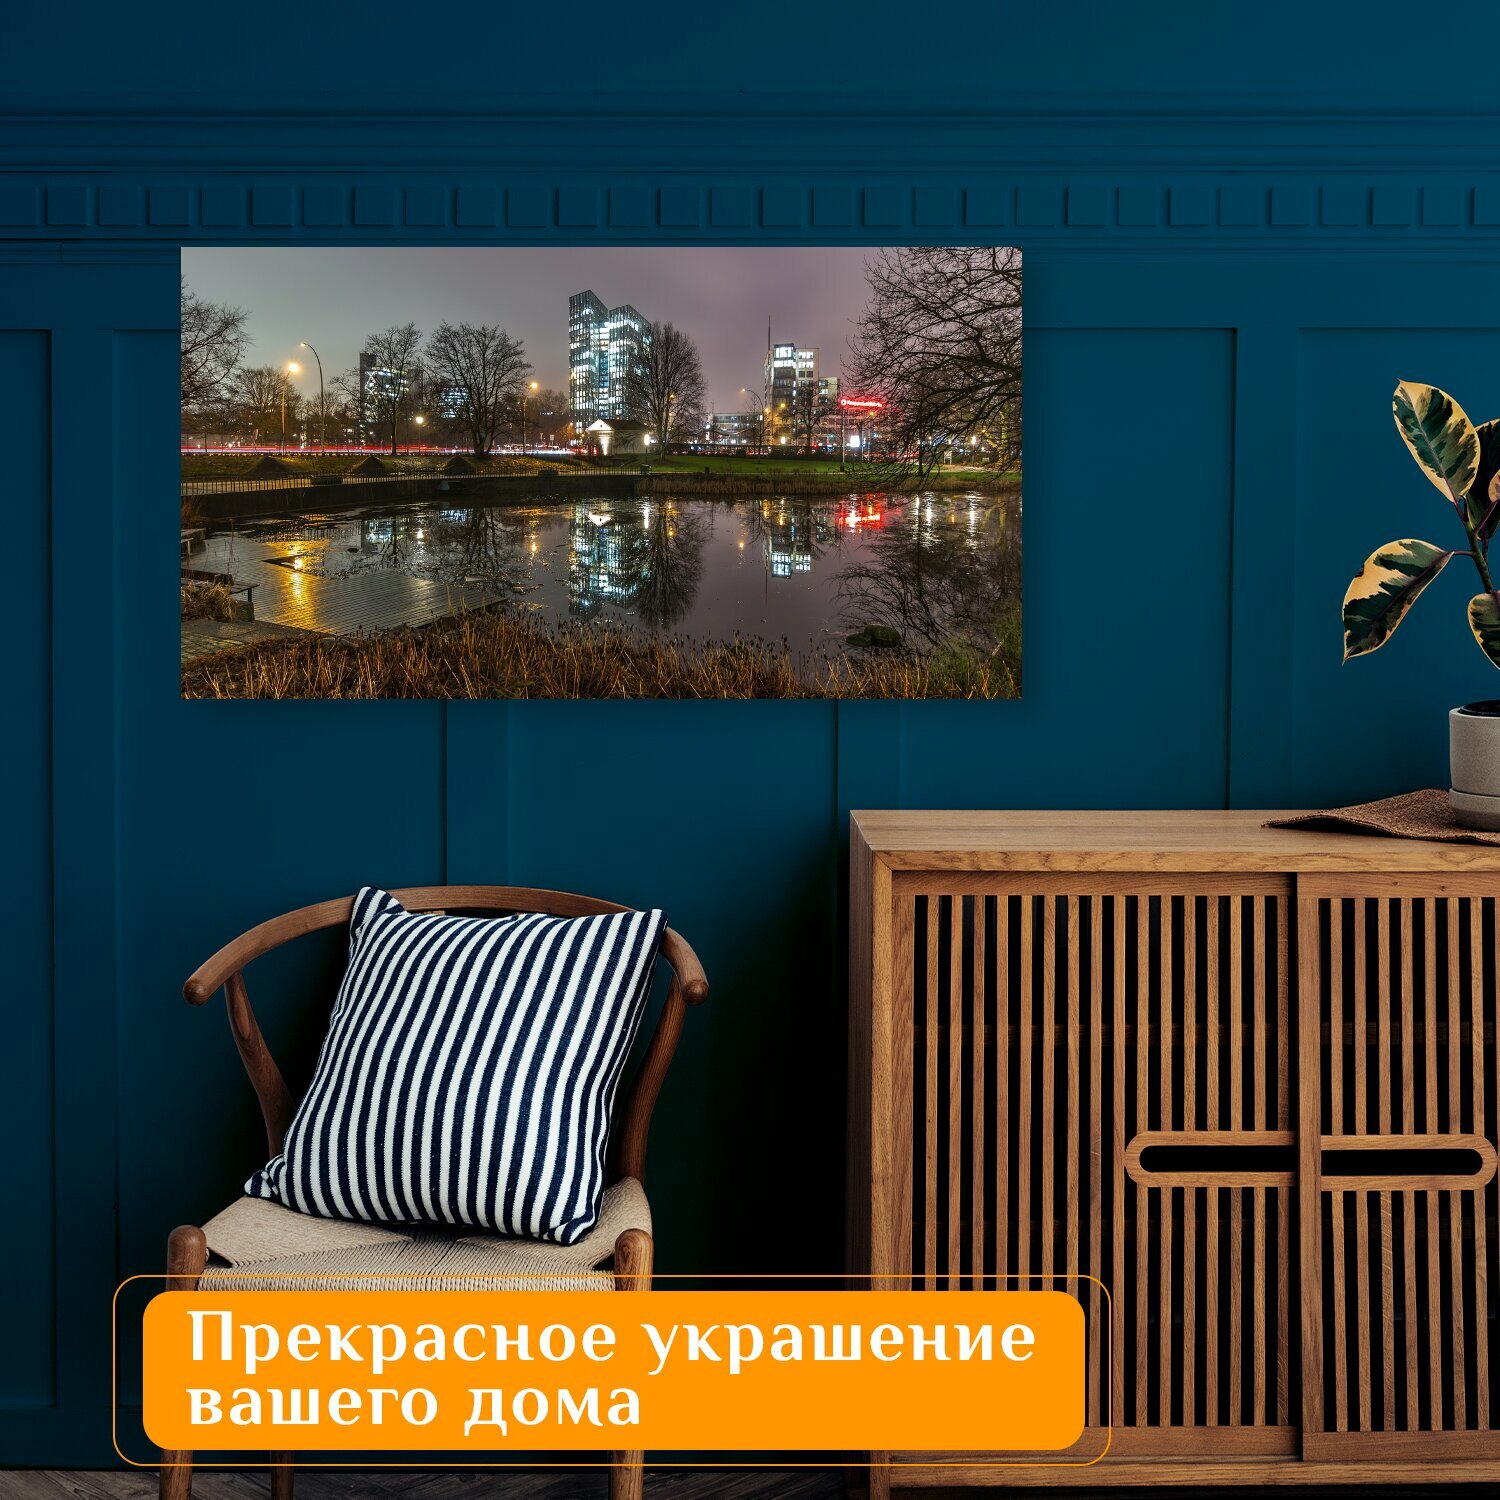 Картина на холсте "Город, городской ландшафт, панорама" на подрамнике 75х40 см. для интерьера